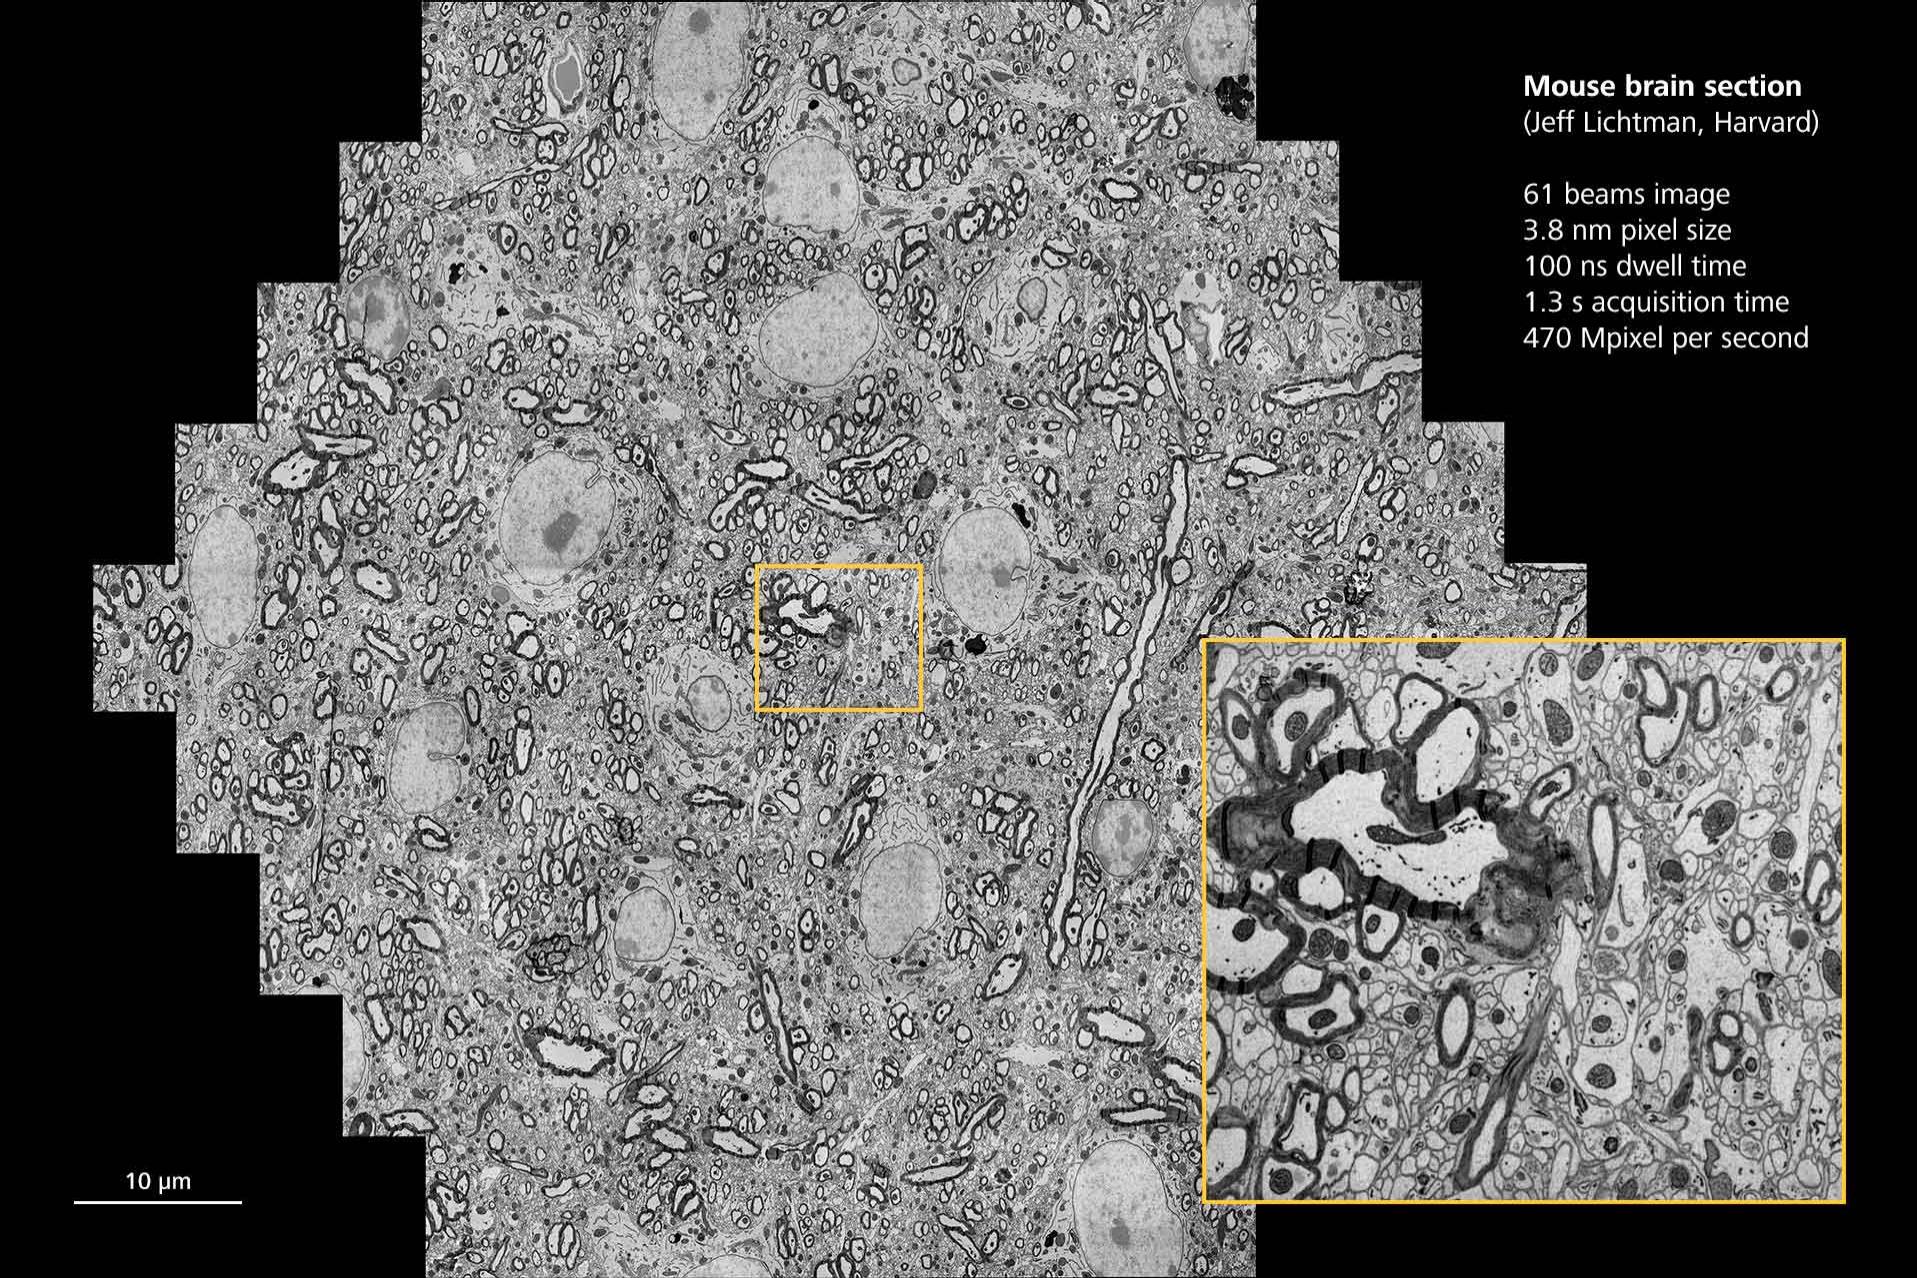 大尺寸小鼠大脑组织切片。由美国哈佛大学的J. Lichtman提供